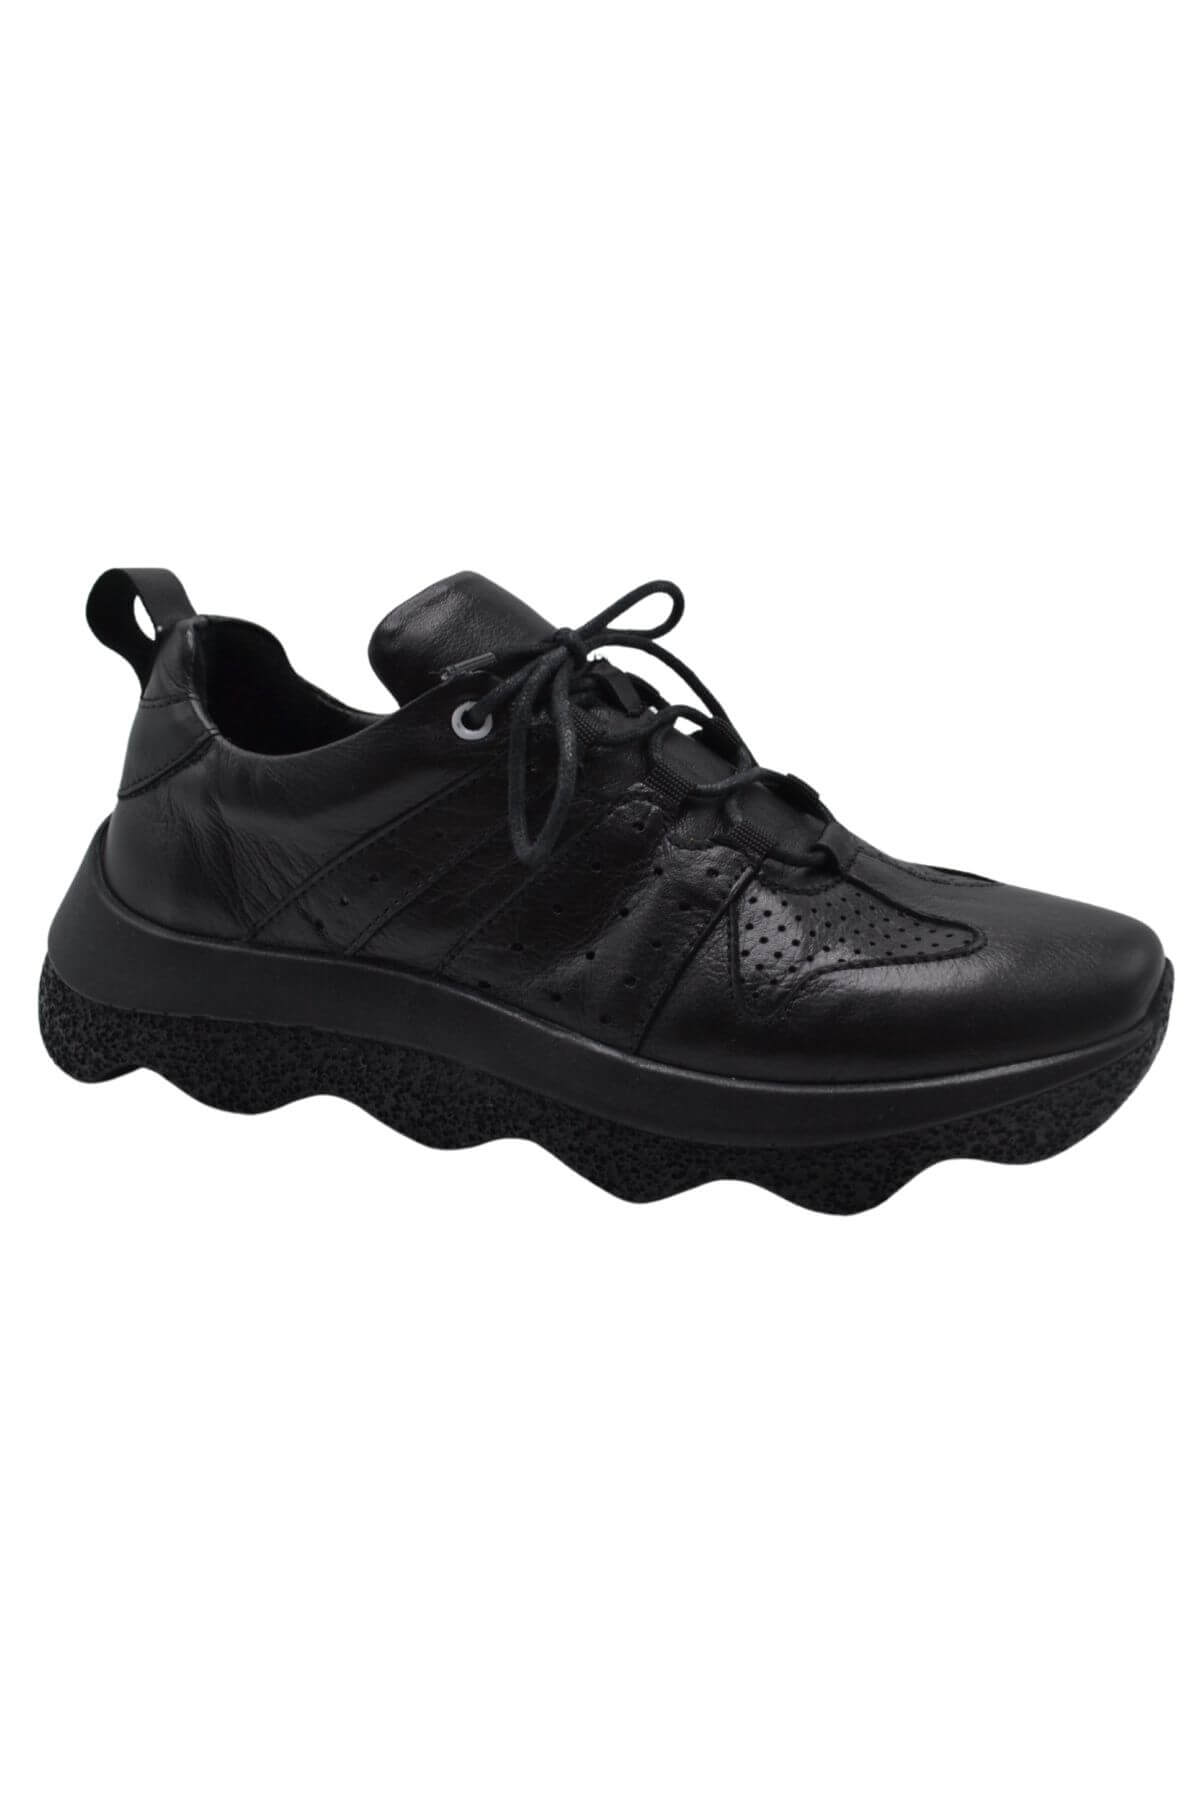 Kadın Deri Sneakers Ayakkabı Siyah 2314001Y